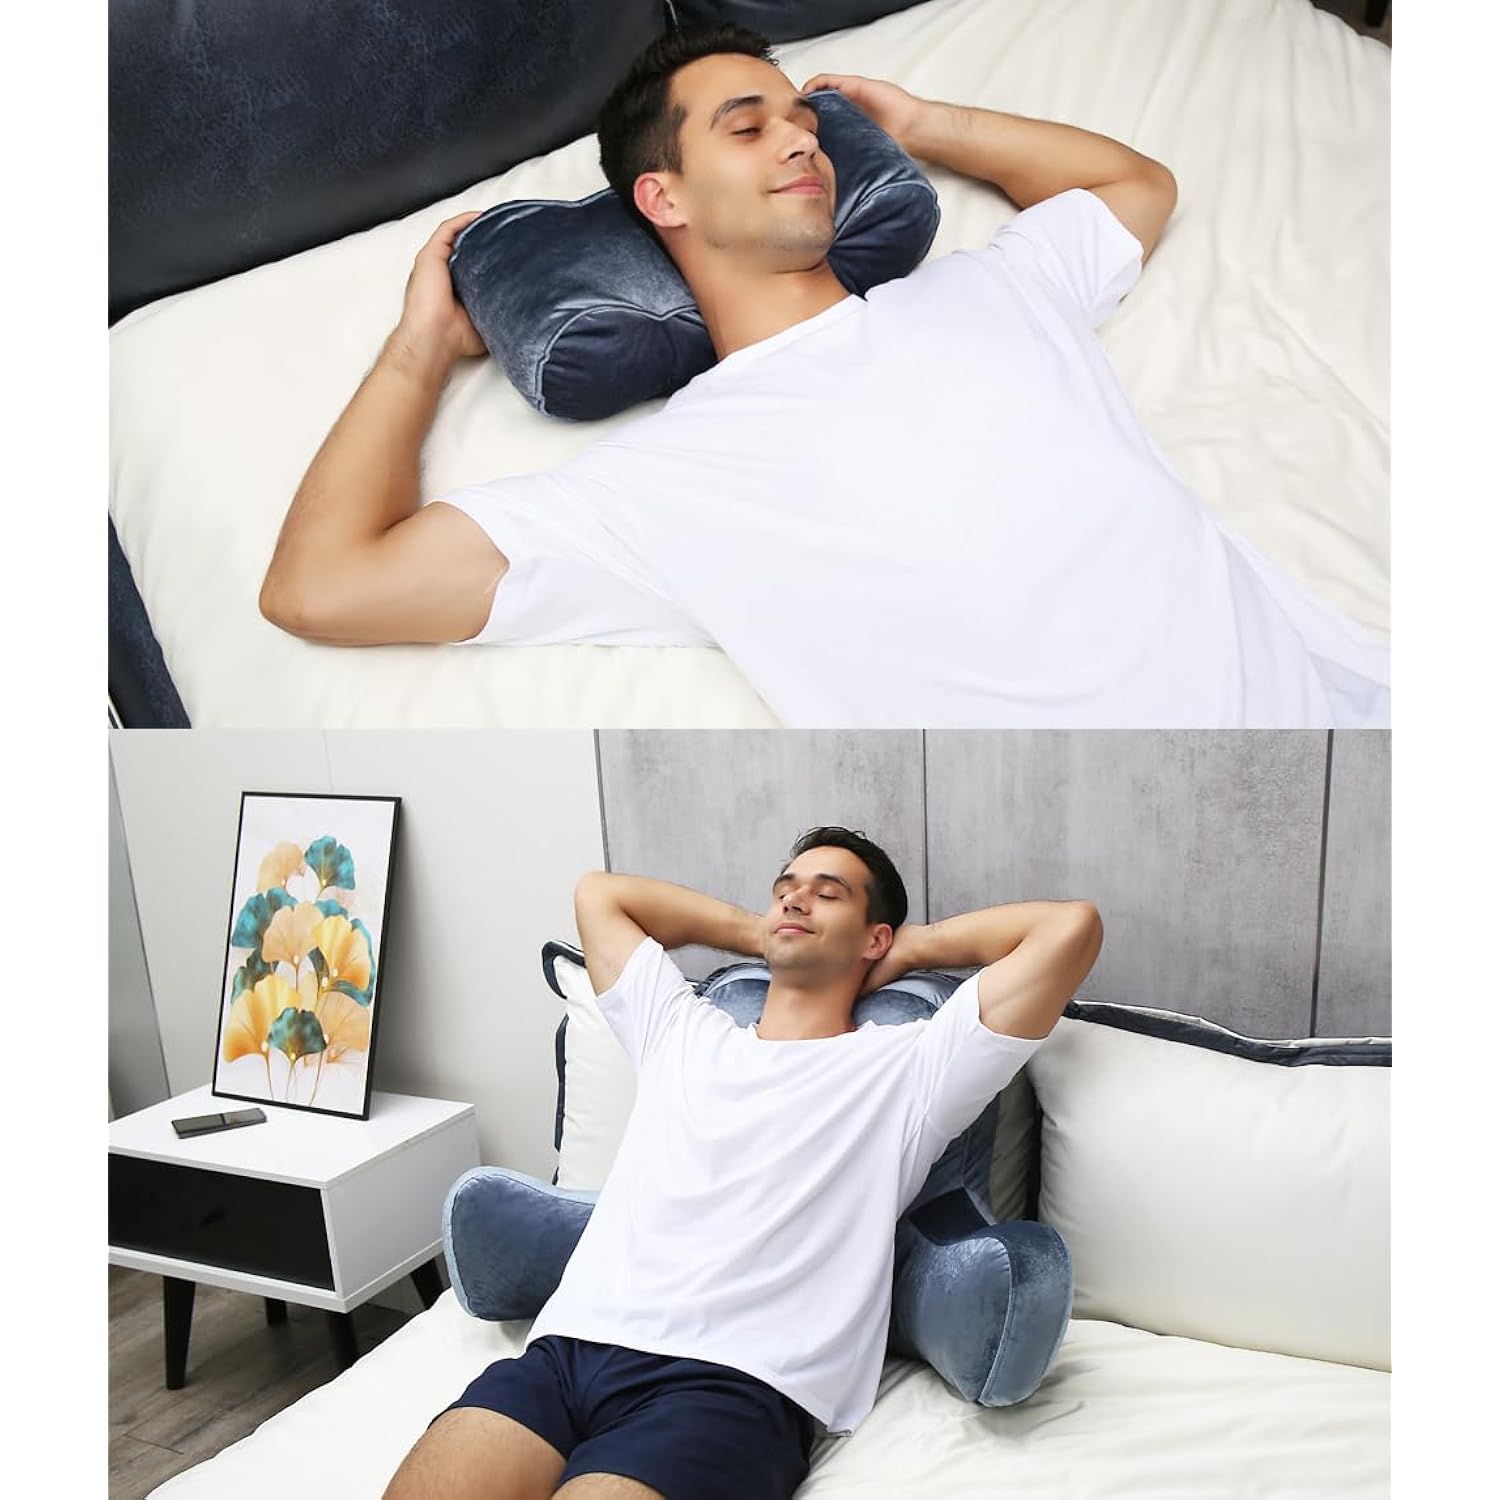 Nestl Reading Pillow Standard Bed Pillow, Back Pillow for Sitting in Bed  Shredded Memory Foam Chair Pillow, Reading & Bed Rest Pillows Grey Back